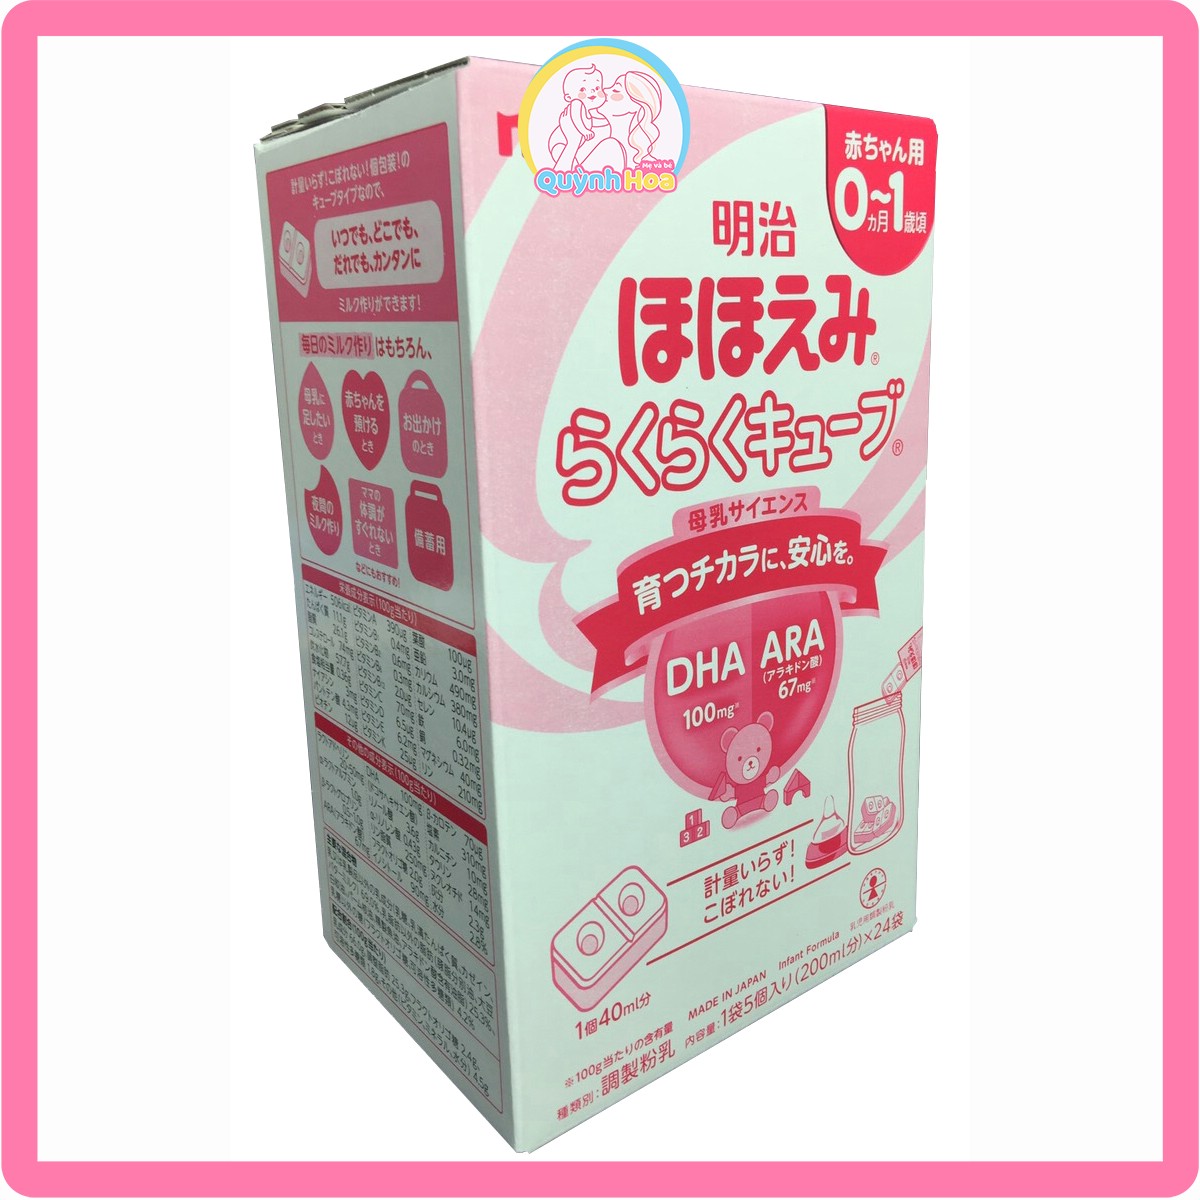 Sữa Meiji Nhật số 0-1 dạng thanh, 24 thanh [DATE 02/2025] thumb 1